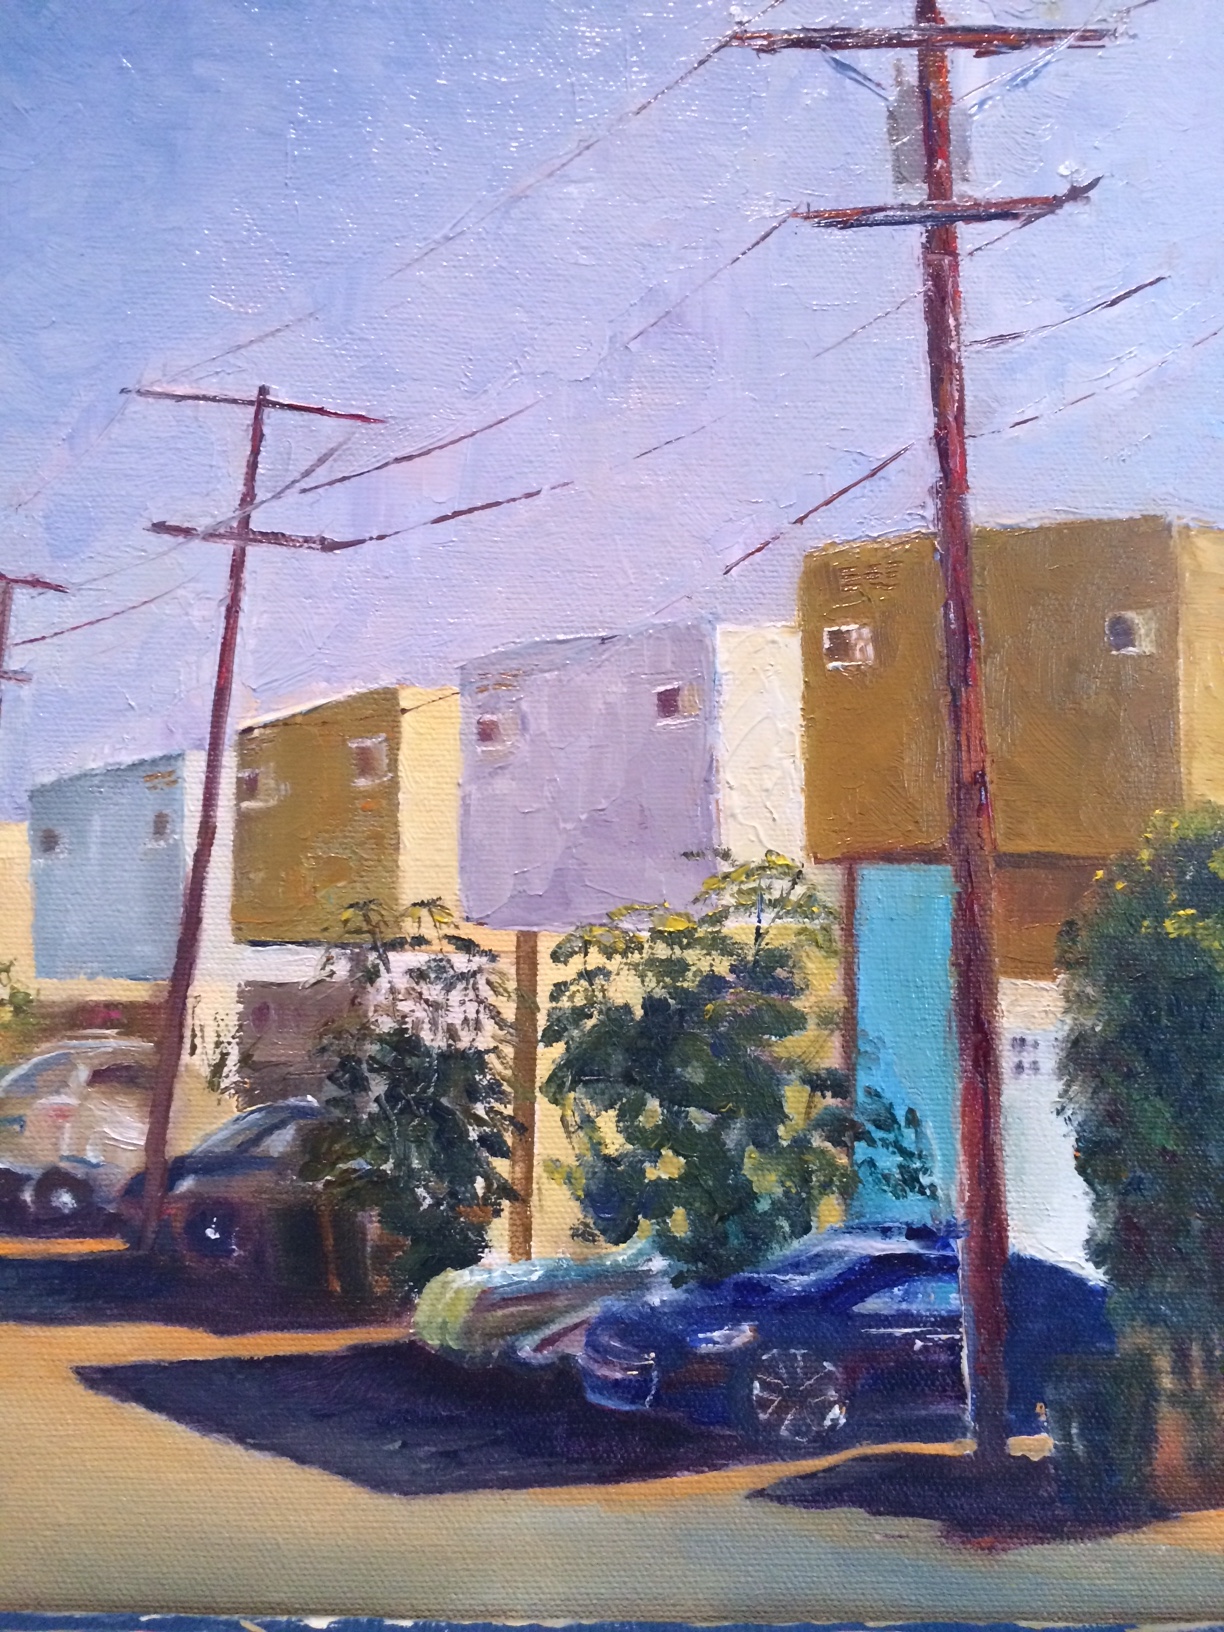 Neighborhood Watch, a plein-air painting by artist Judy Salinsky.